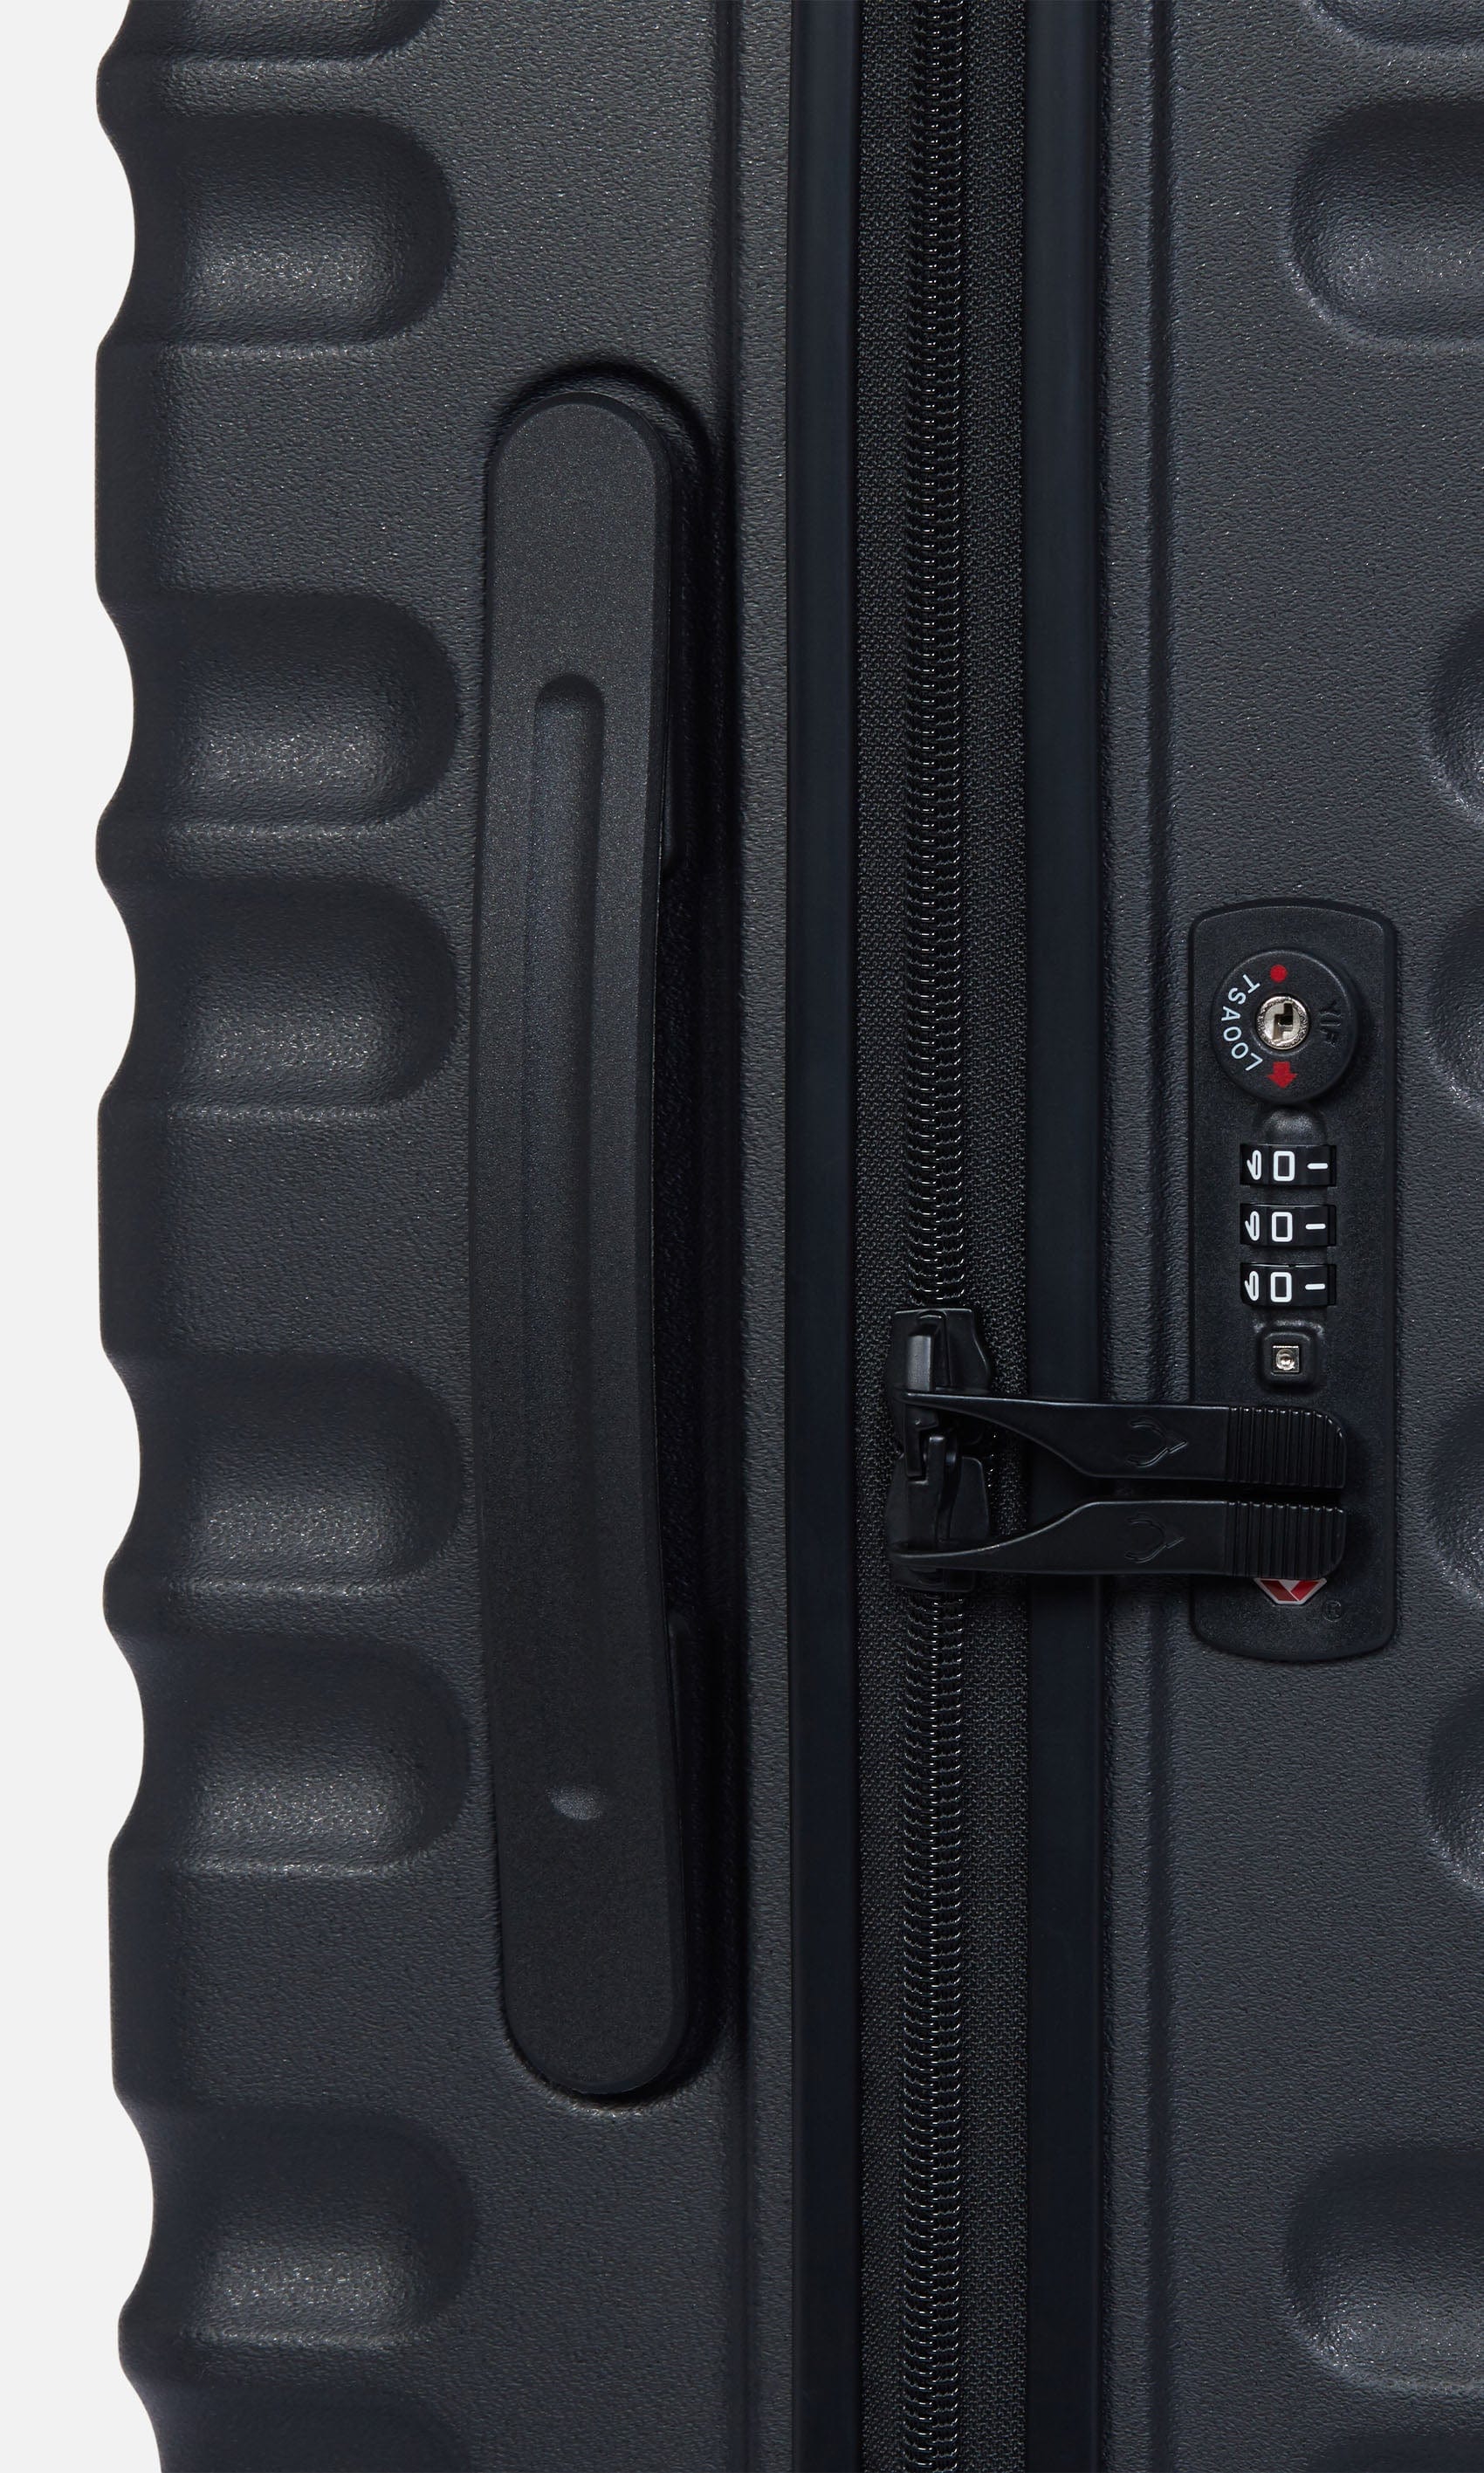 Antler Luggage -  Clifton cabin in black - Hard Suitcases Clifton Cabin Suitcase 55x40x20cm Black | Hard Suitcase | Antler UK